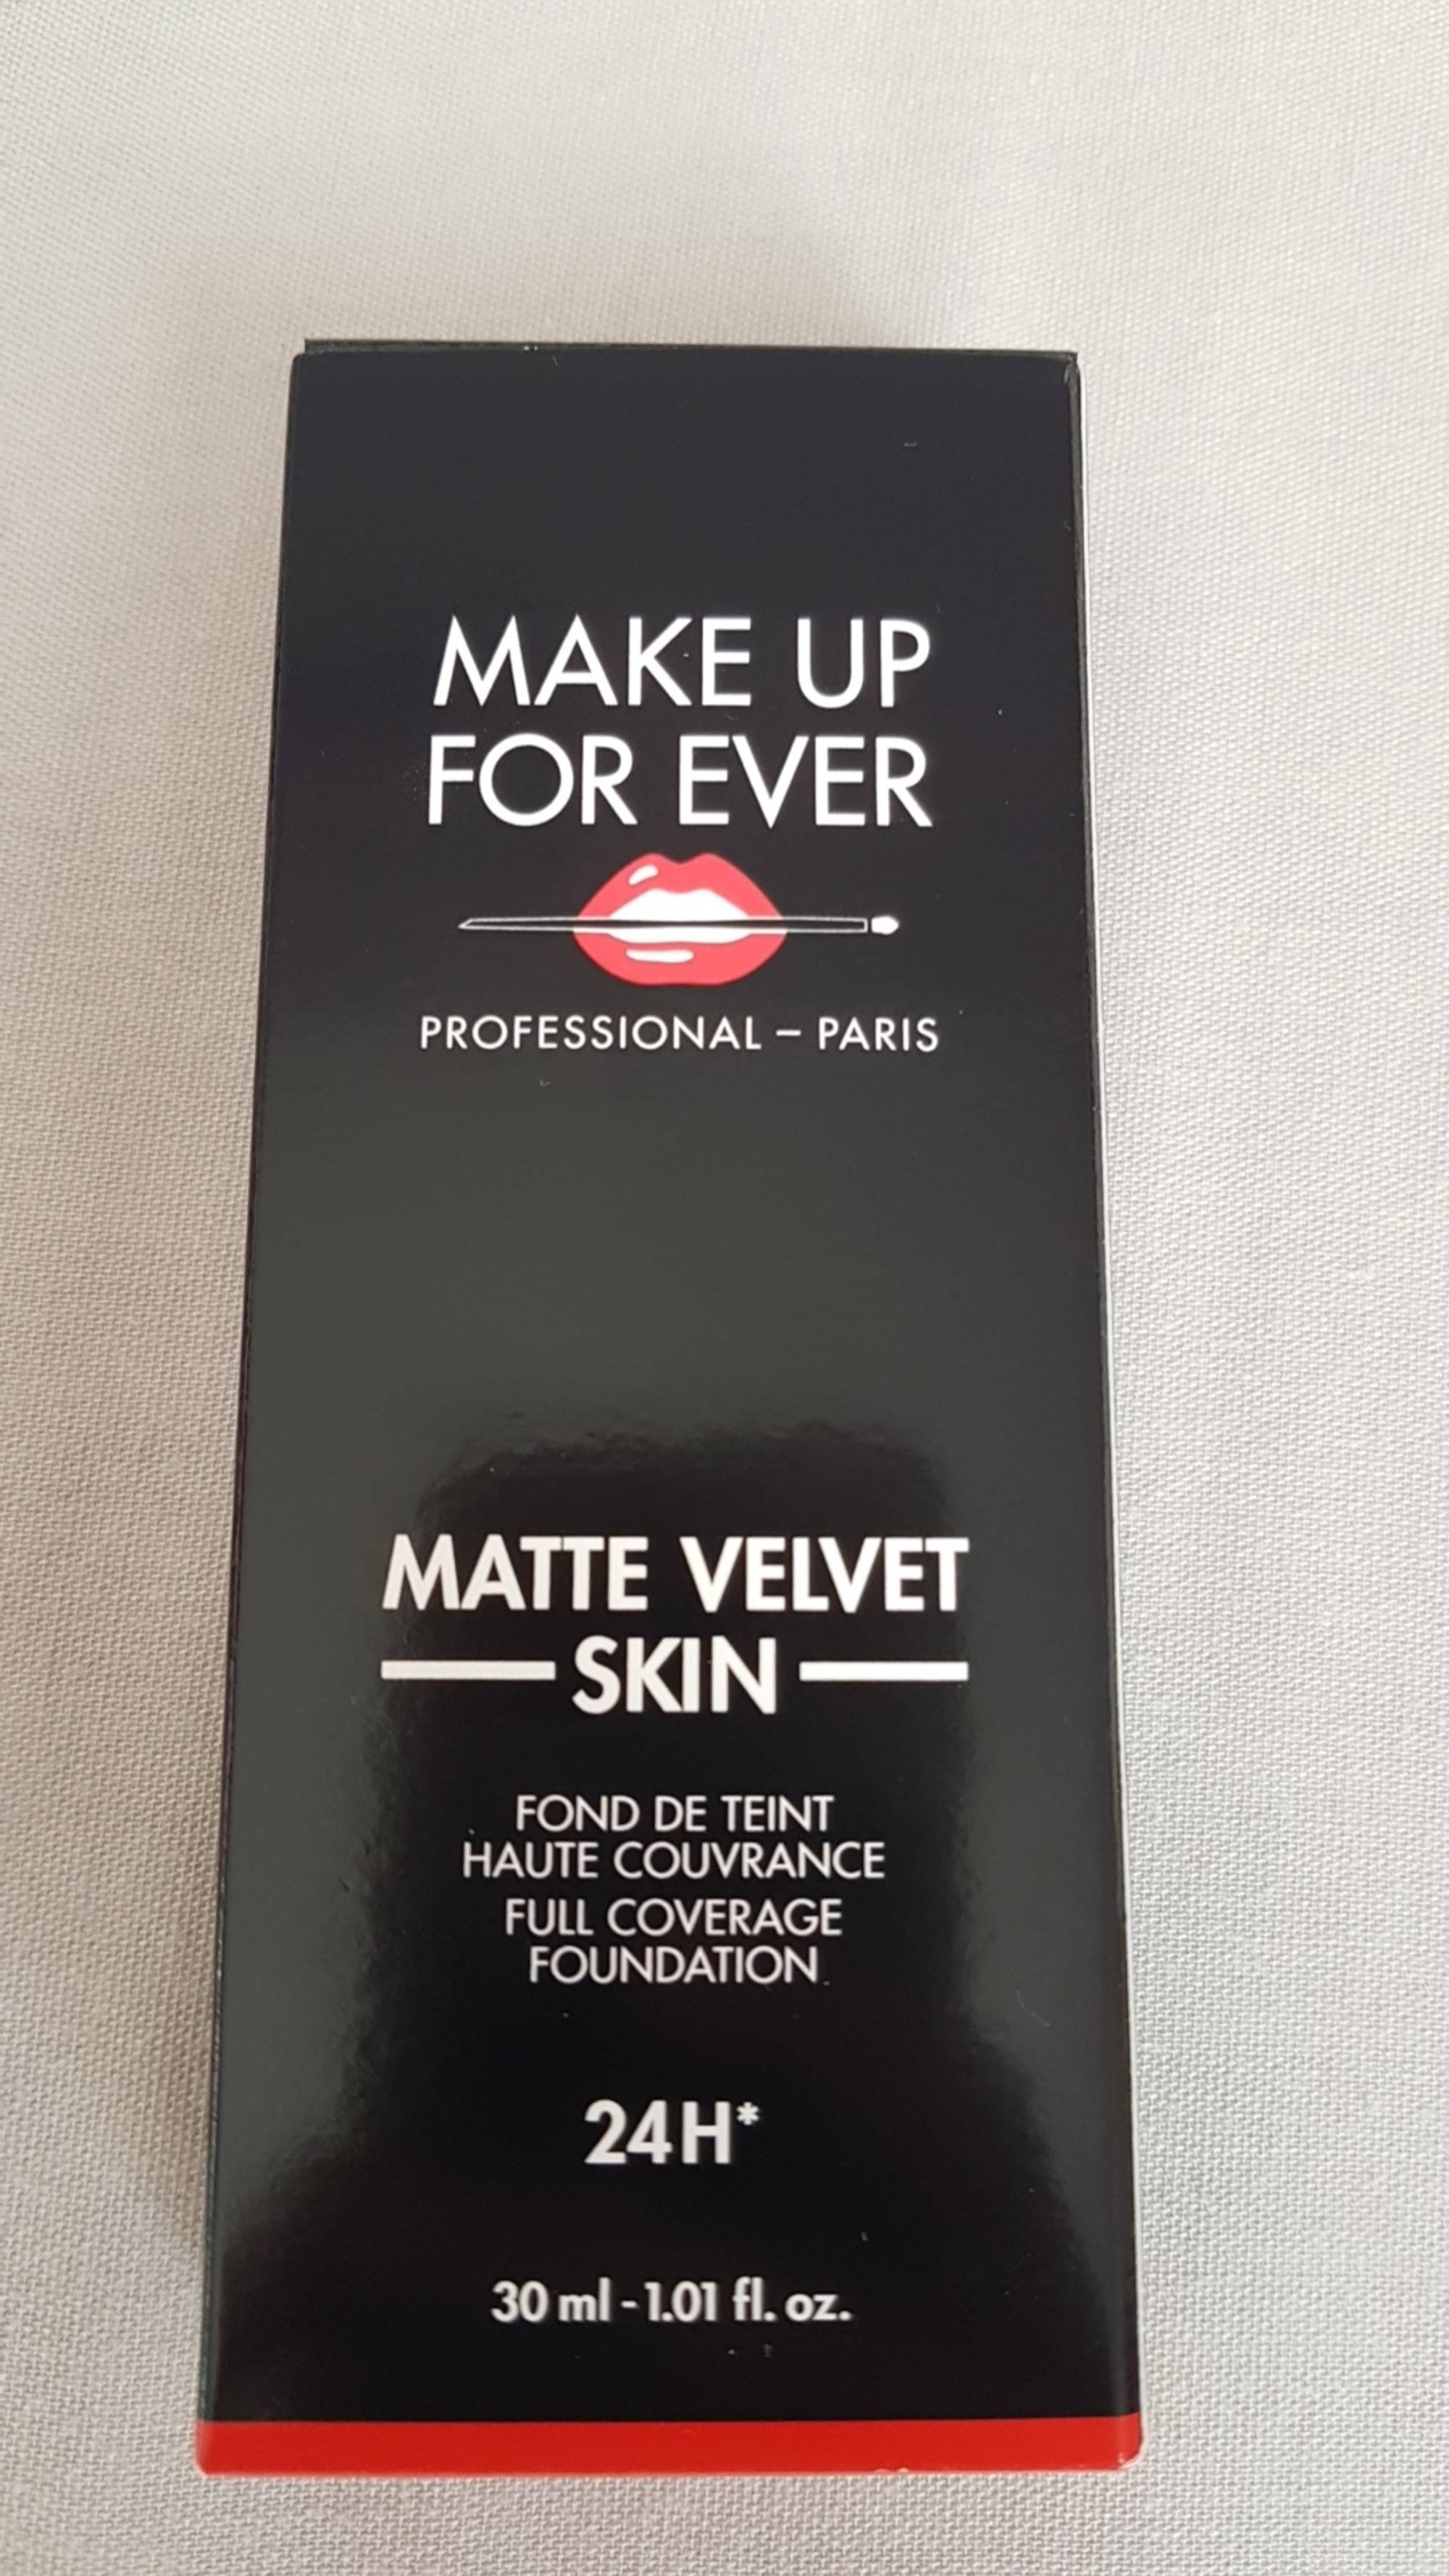 MAKE UP FOR EVER - Matte velvet Skin - Fond de teint haute couvrance 24h